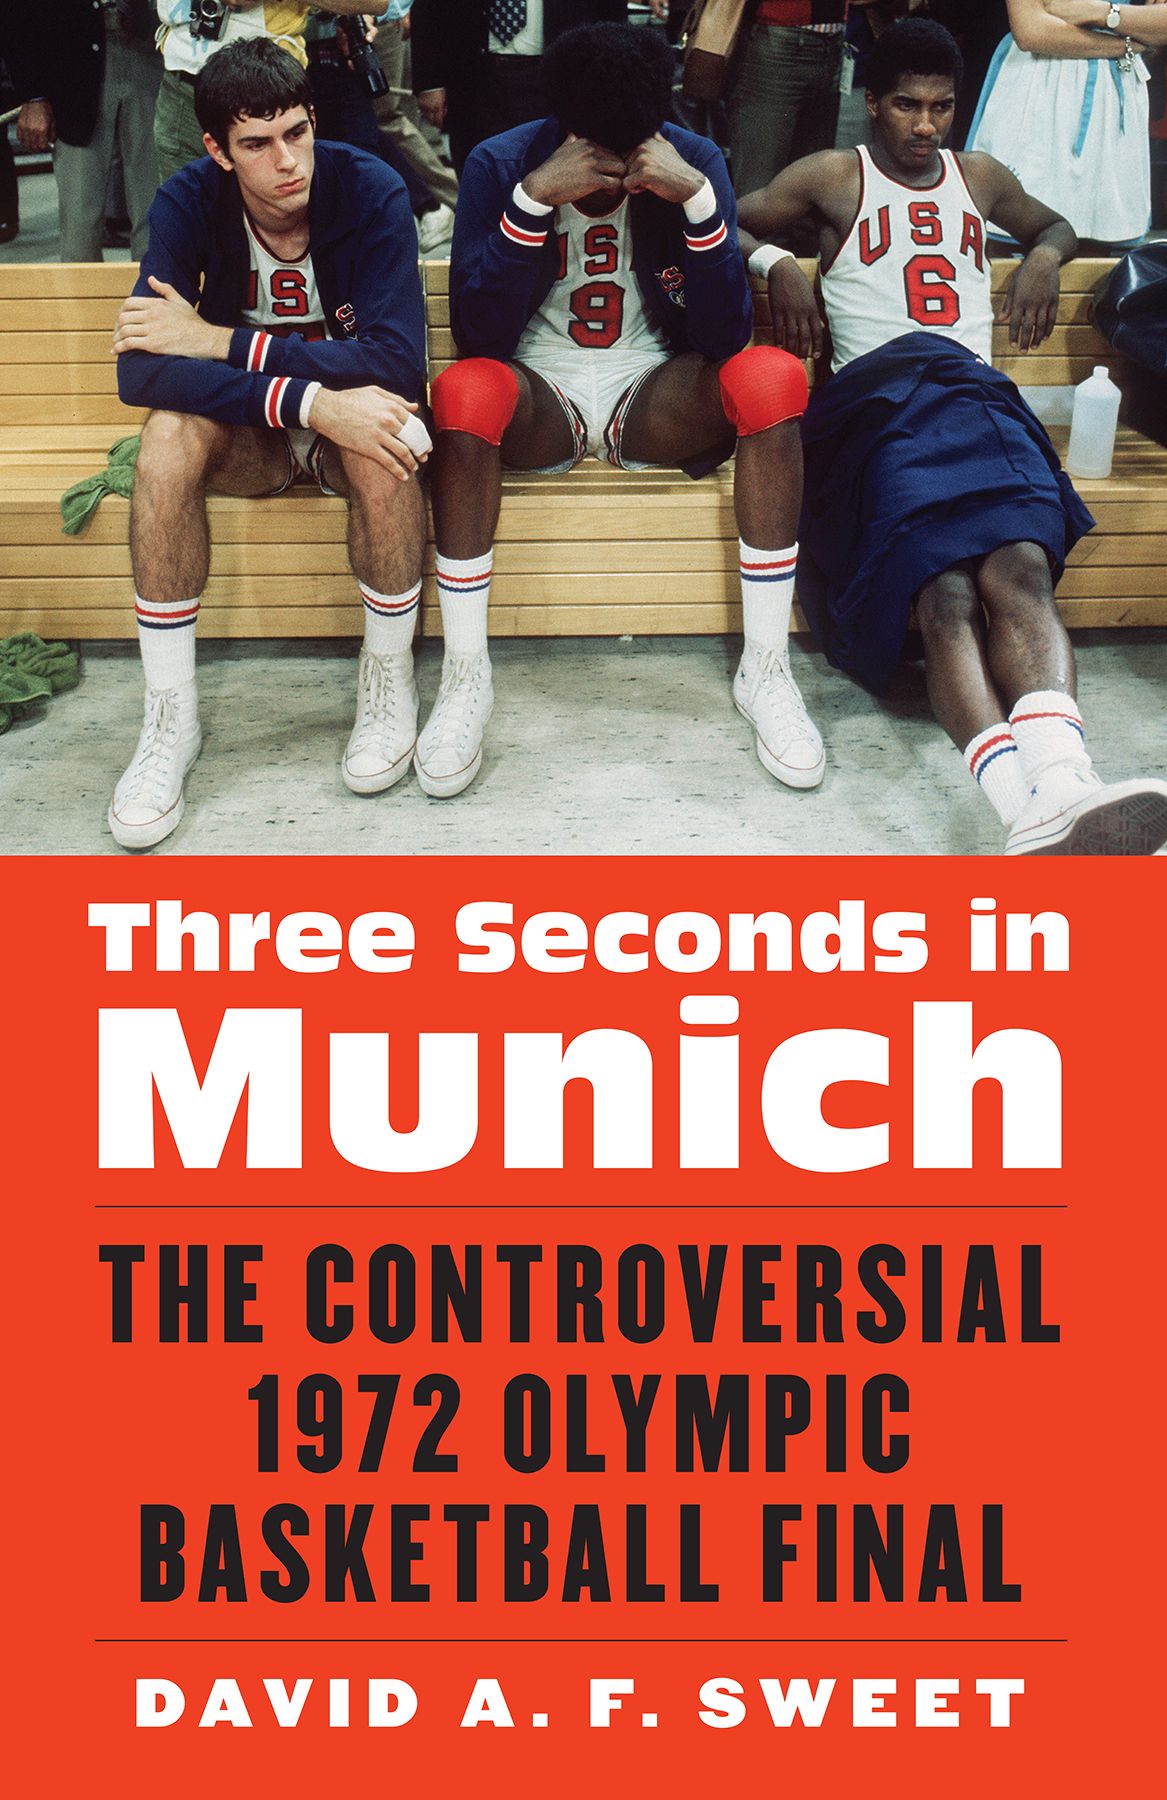 олимпийский баскетбольный турнир, Мюнхен-1972, Сборная СССР, сборная США, книги